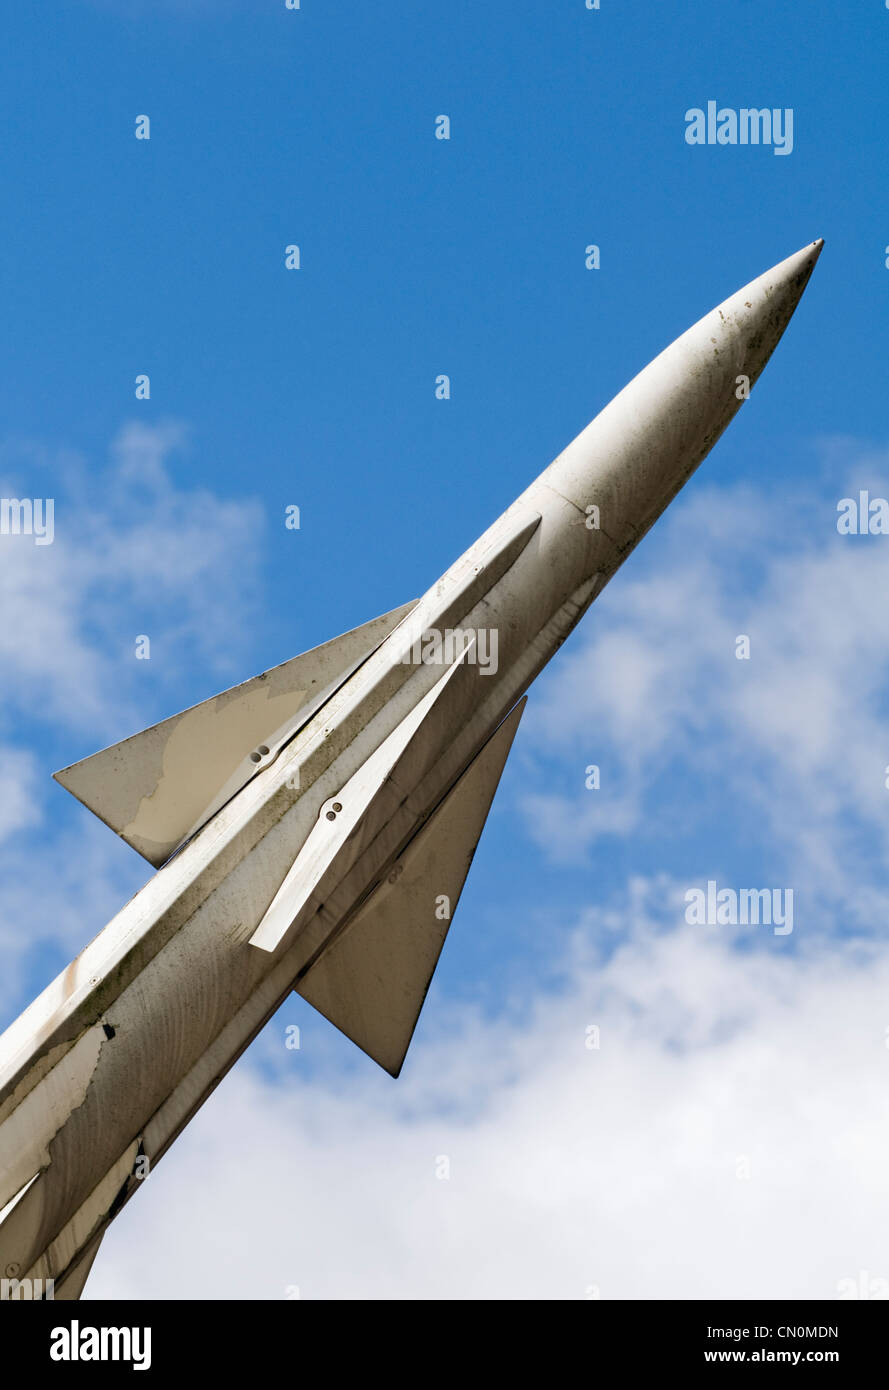 Un missile en position de lancement Banque D'Images